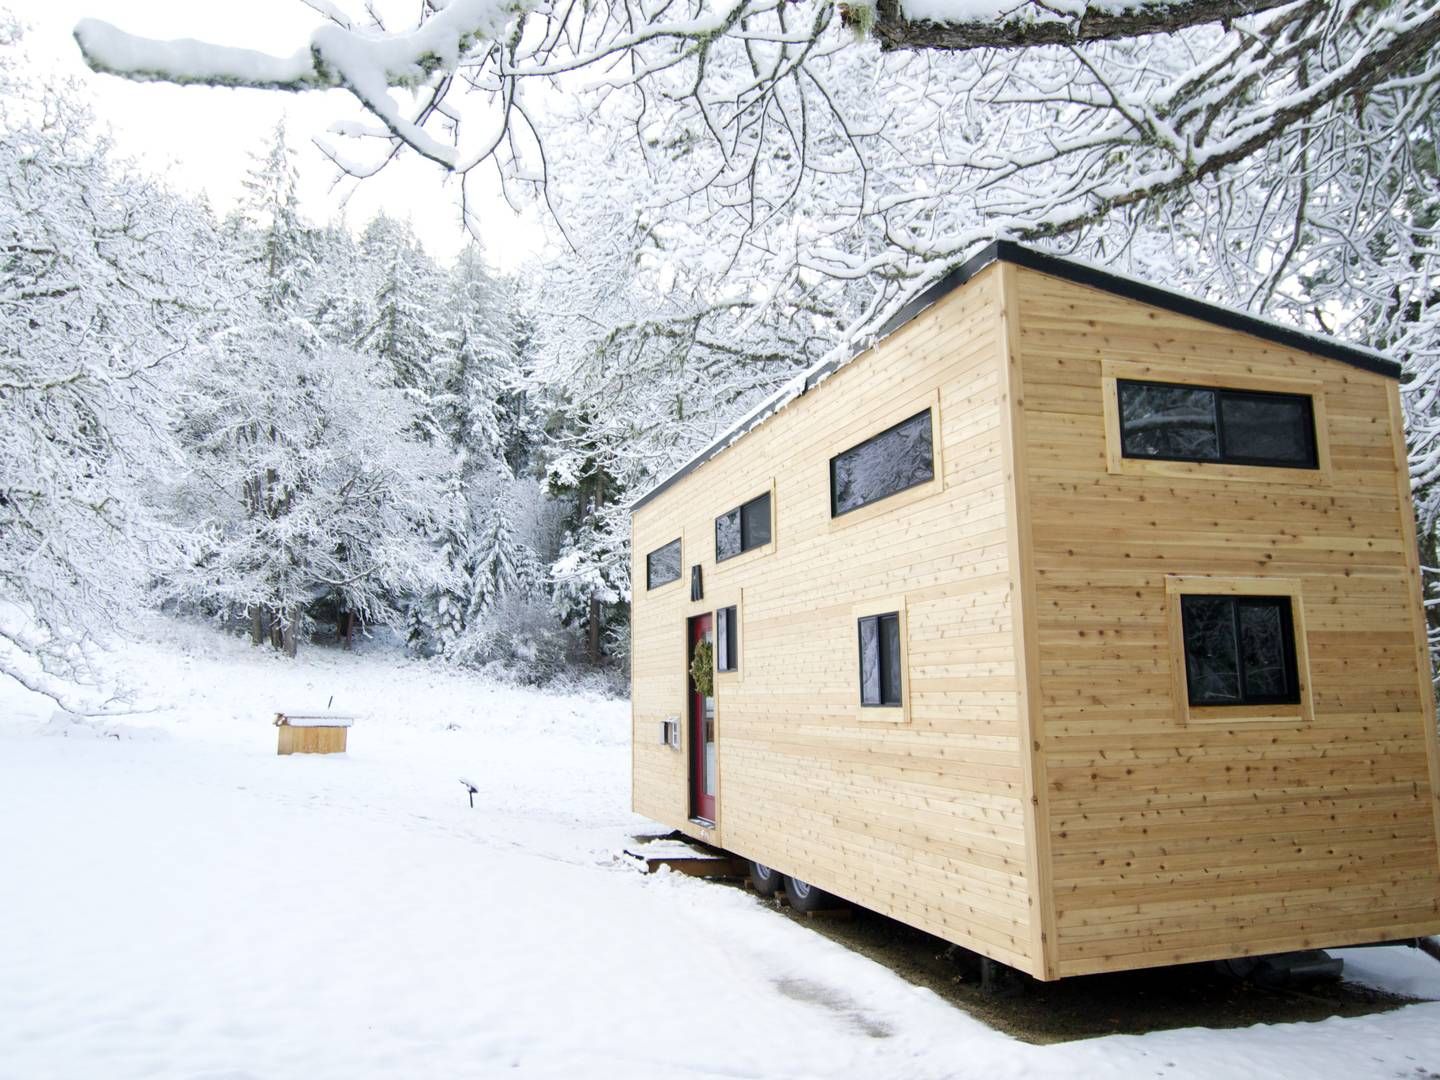 ENKLERE: Fra 1. juli blir det enklere å bygge mikrohus. | Foto: Tinyhousebuild / REX Shutterstock editorial / NTB